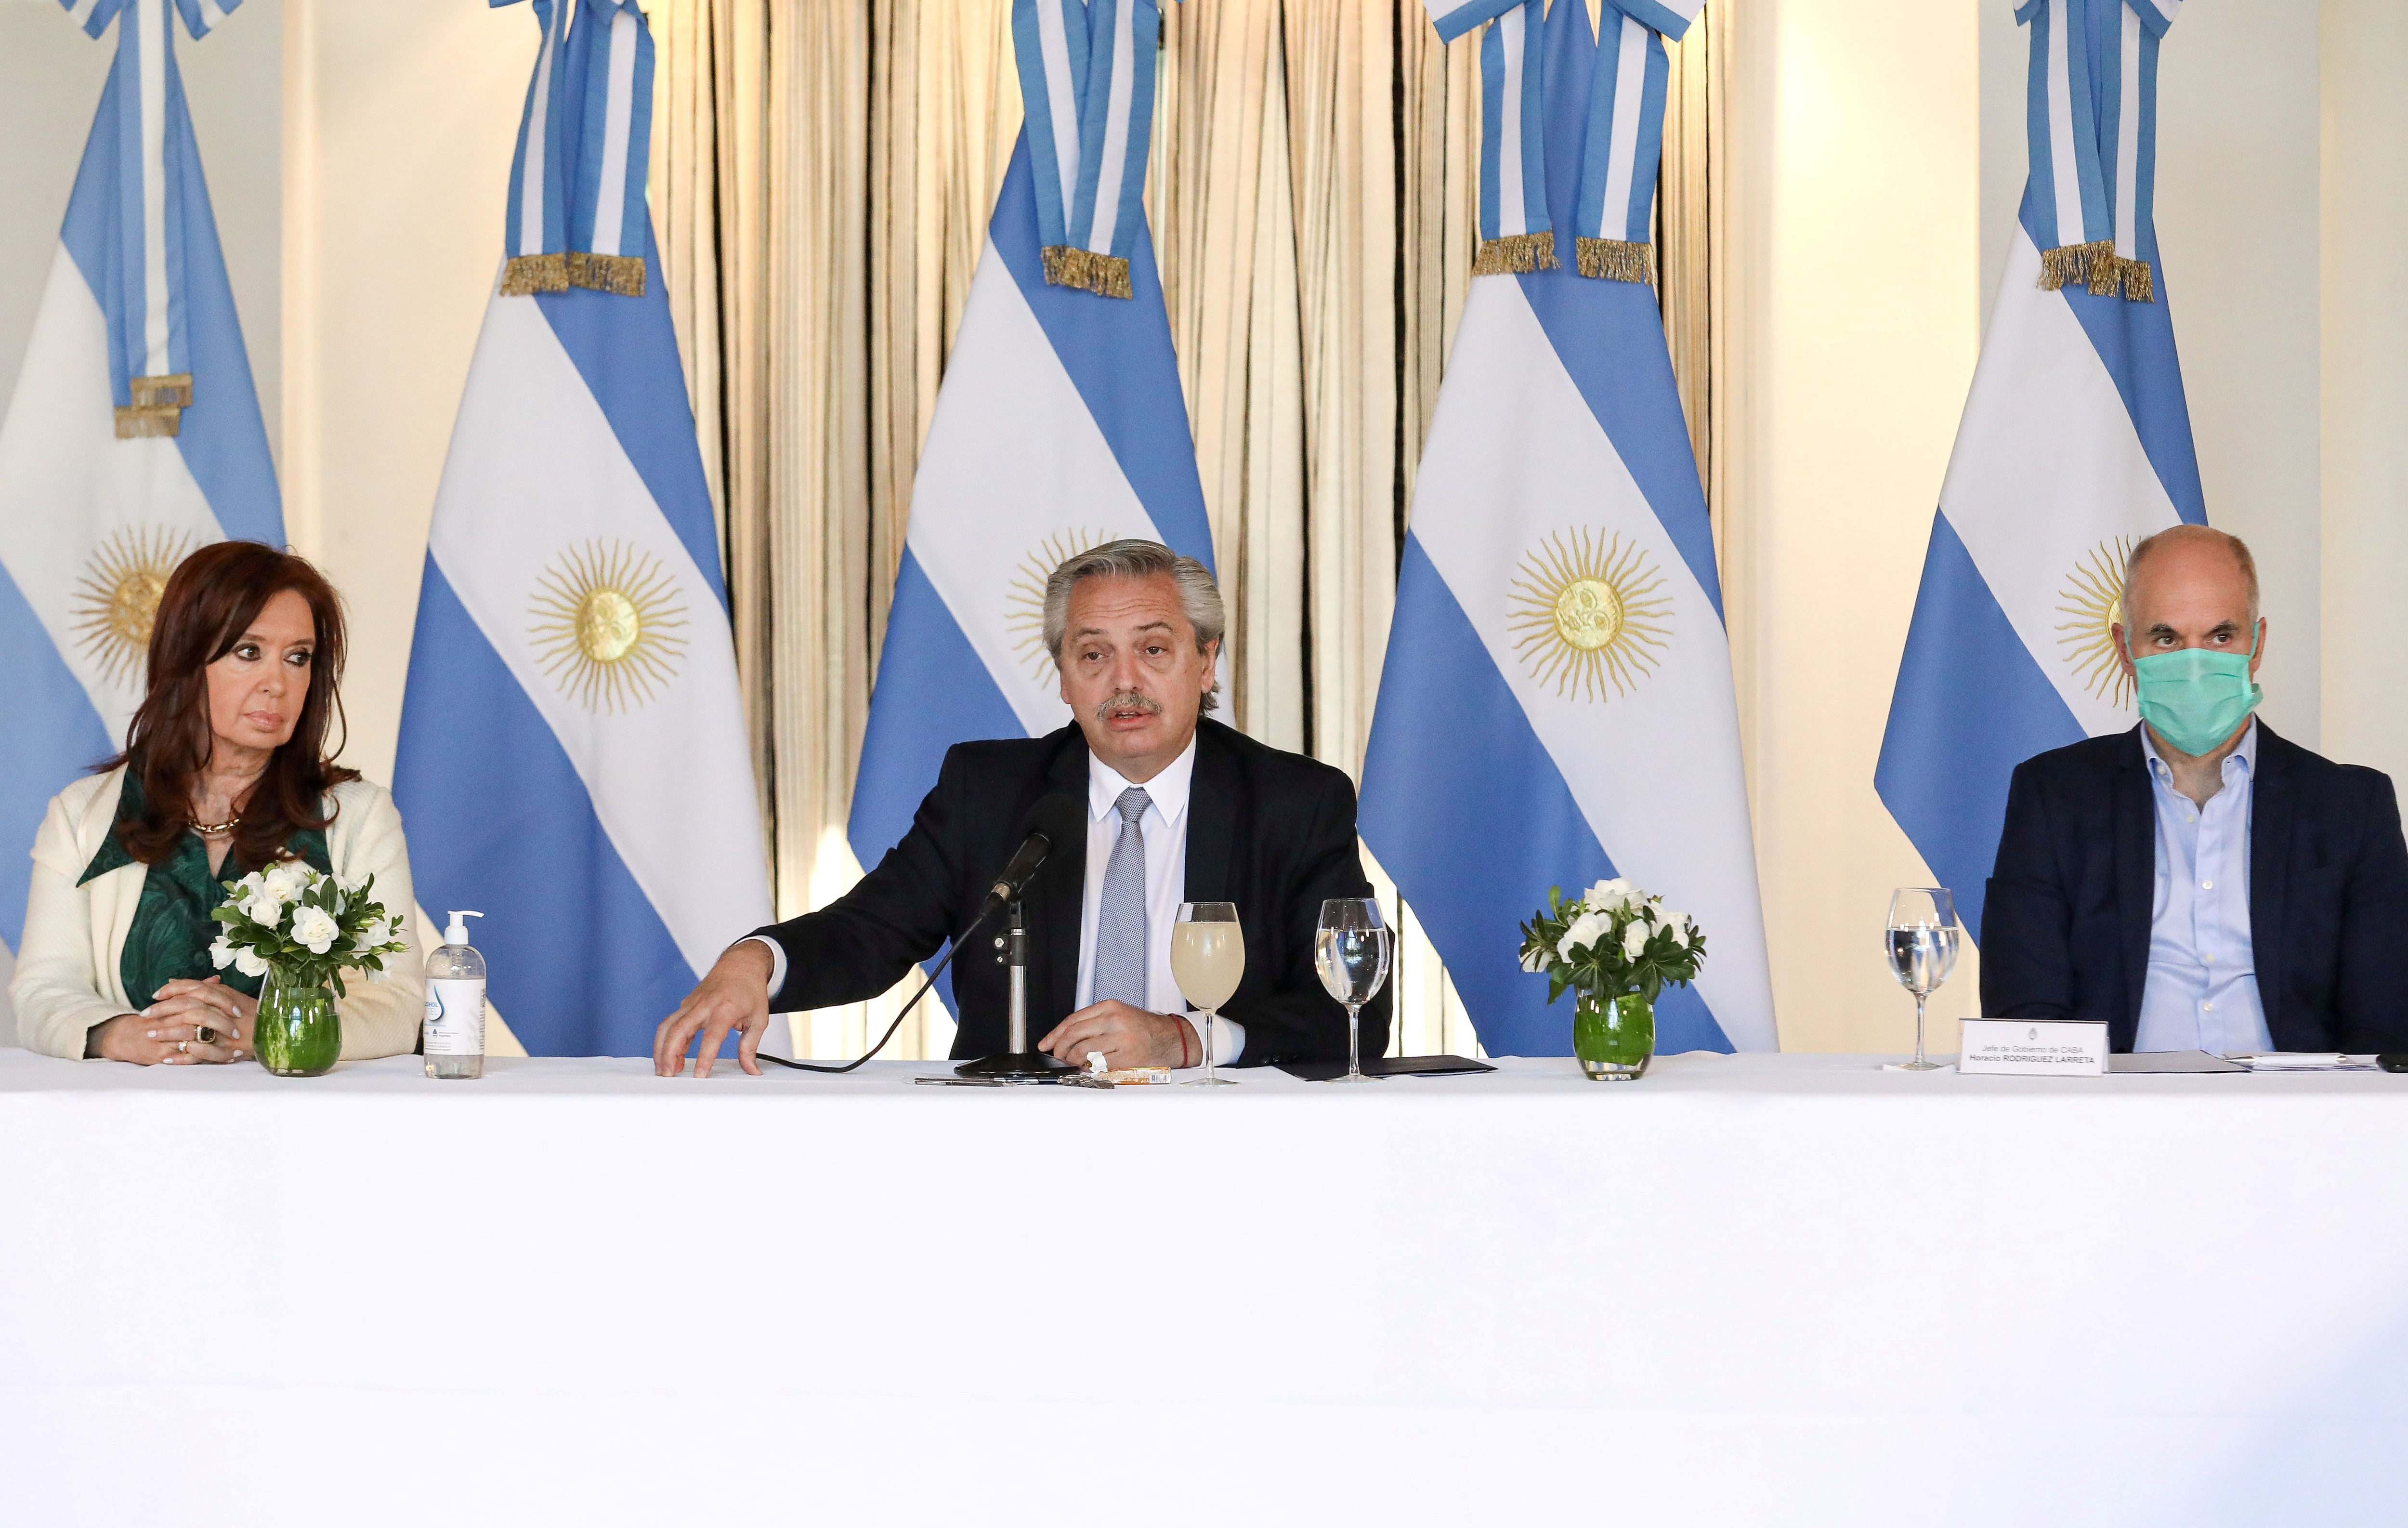 El 16 de abril, Alberto Fernández convocó a la vicepresidenta Cristina Kirchner y a todos los gobernadores para comunicarles cuál es la oferta de su gobierno a los bonistas en medio de la reestructuración de la deuda. También comenzó a discutirse la cuarentena administrada, que comenzará el 20 de abril en algunas provincias. 